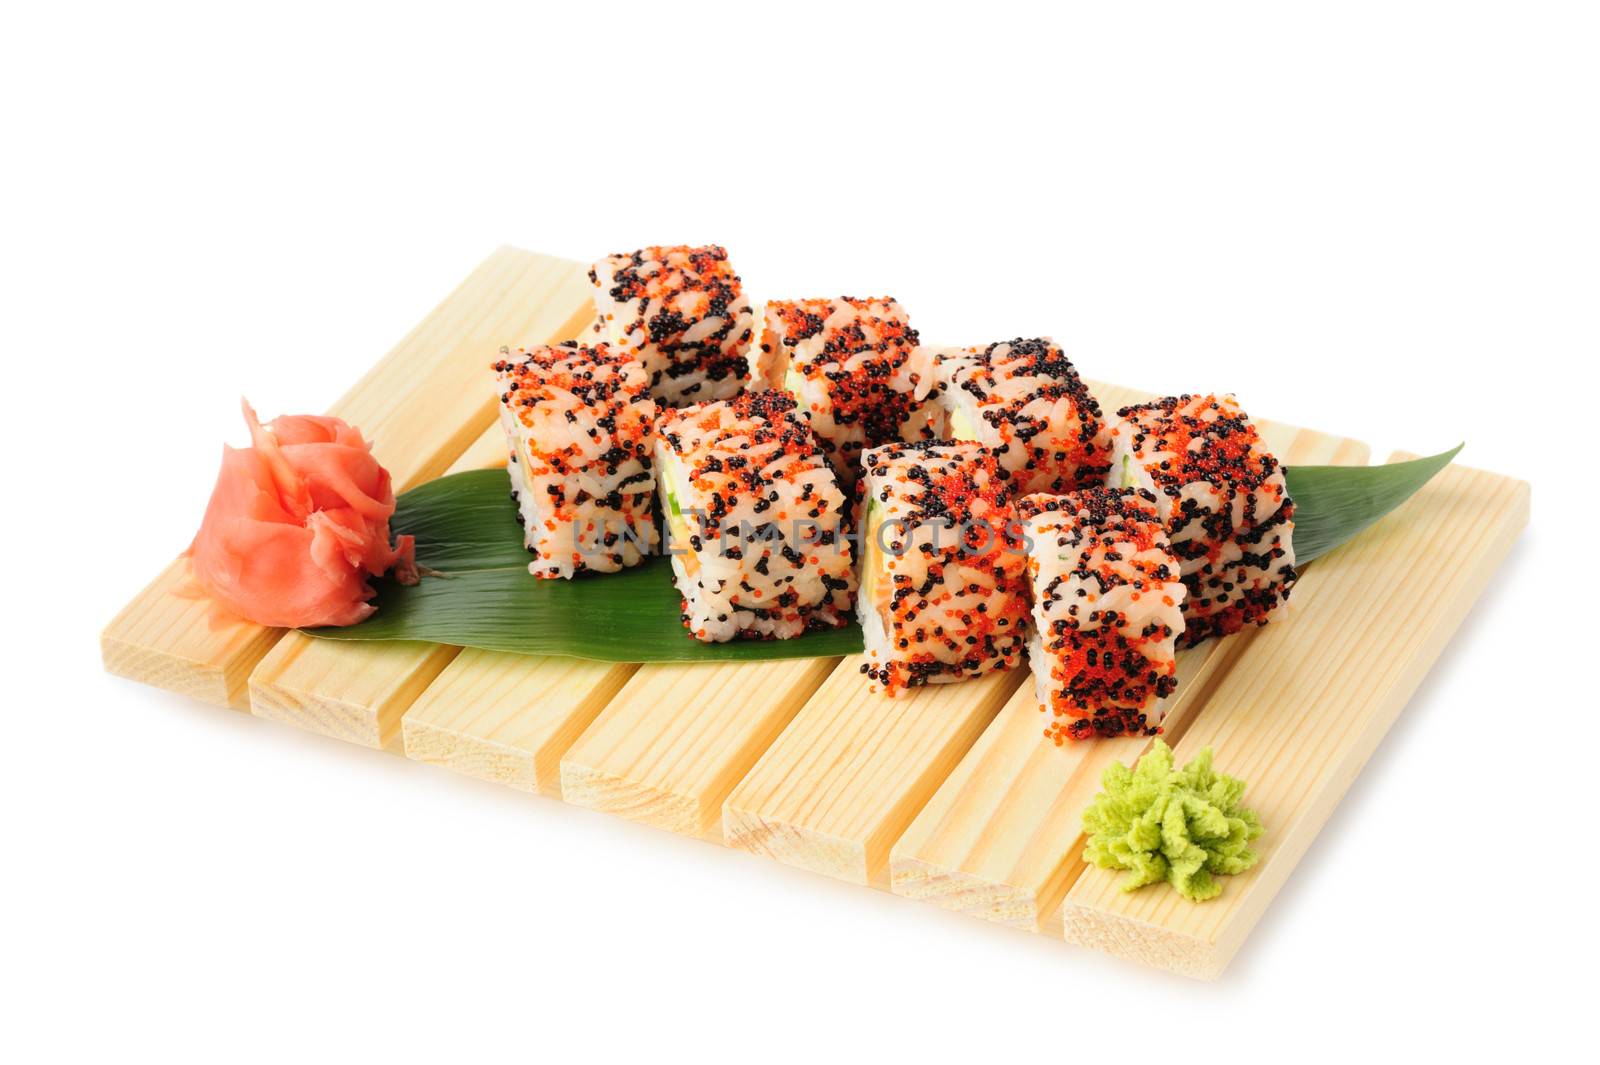 Karaoke rolls maki sushi, isolated on white